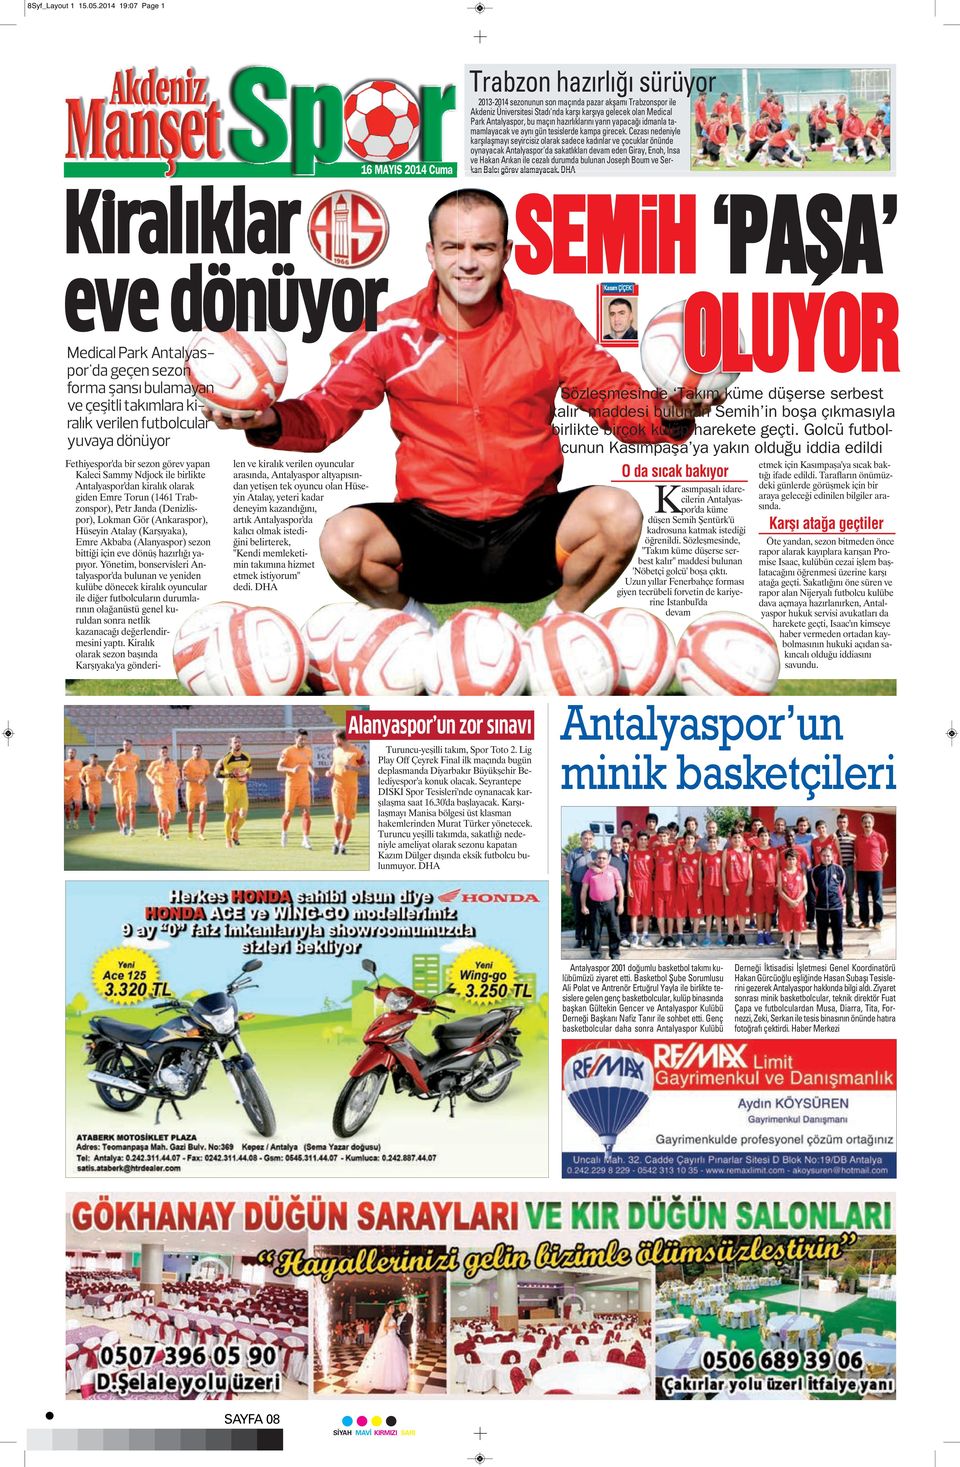 yuvaya dönüyor Fethiyespor'da bir sezon görev yapan Kaleci Sammy Ndjock ile birlikte Antalyaspor'dan kiralık olarak giden Emre Torun (1461 Trabzonspor), Petr Janda (Denizlispor), Lokman Gör